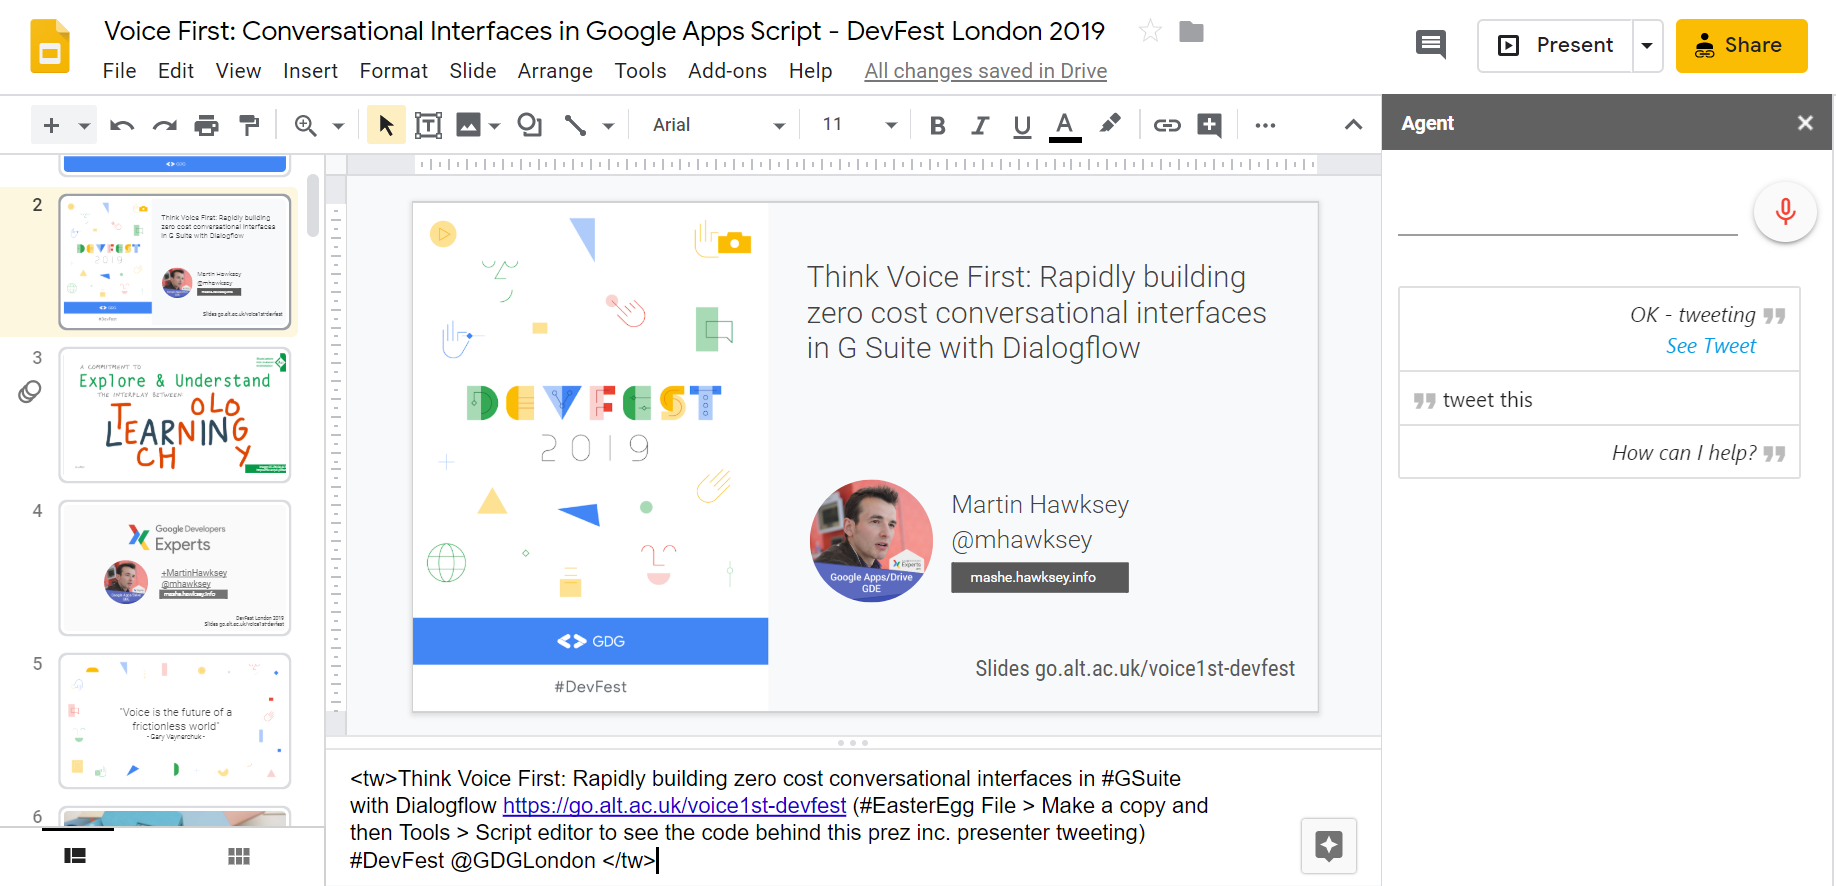 Using Google Slide speaker notes to prepare tweet text